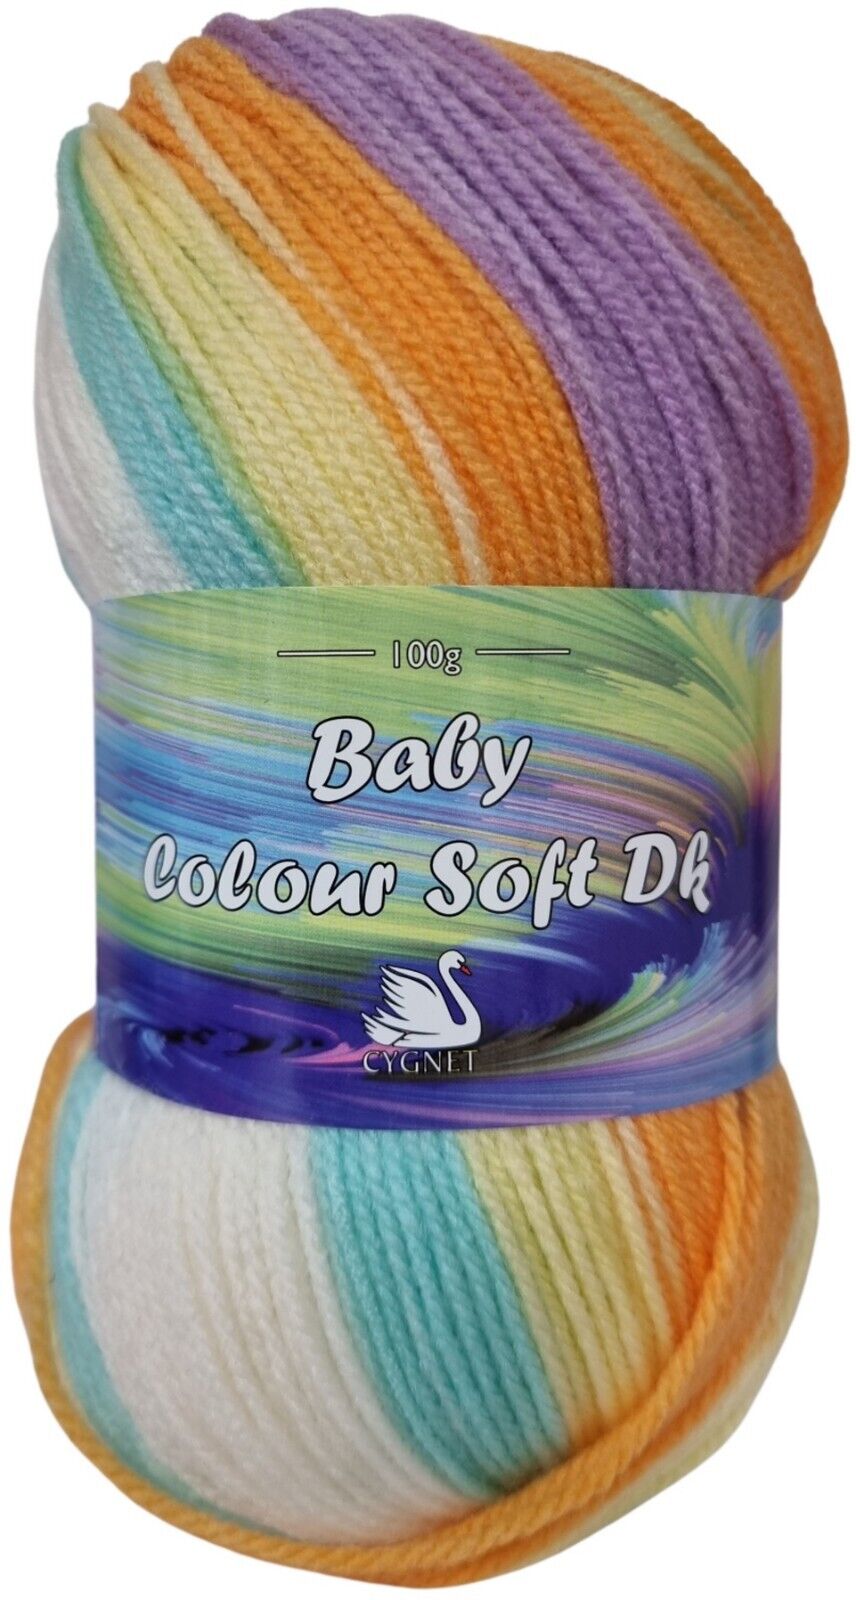 Cygnet BABY COLOUR SOFT DK Knitting Yarn / Wool - 100g - Floral Dreams